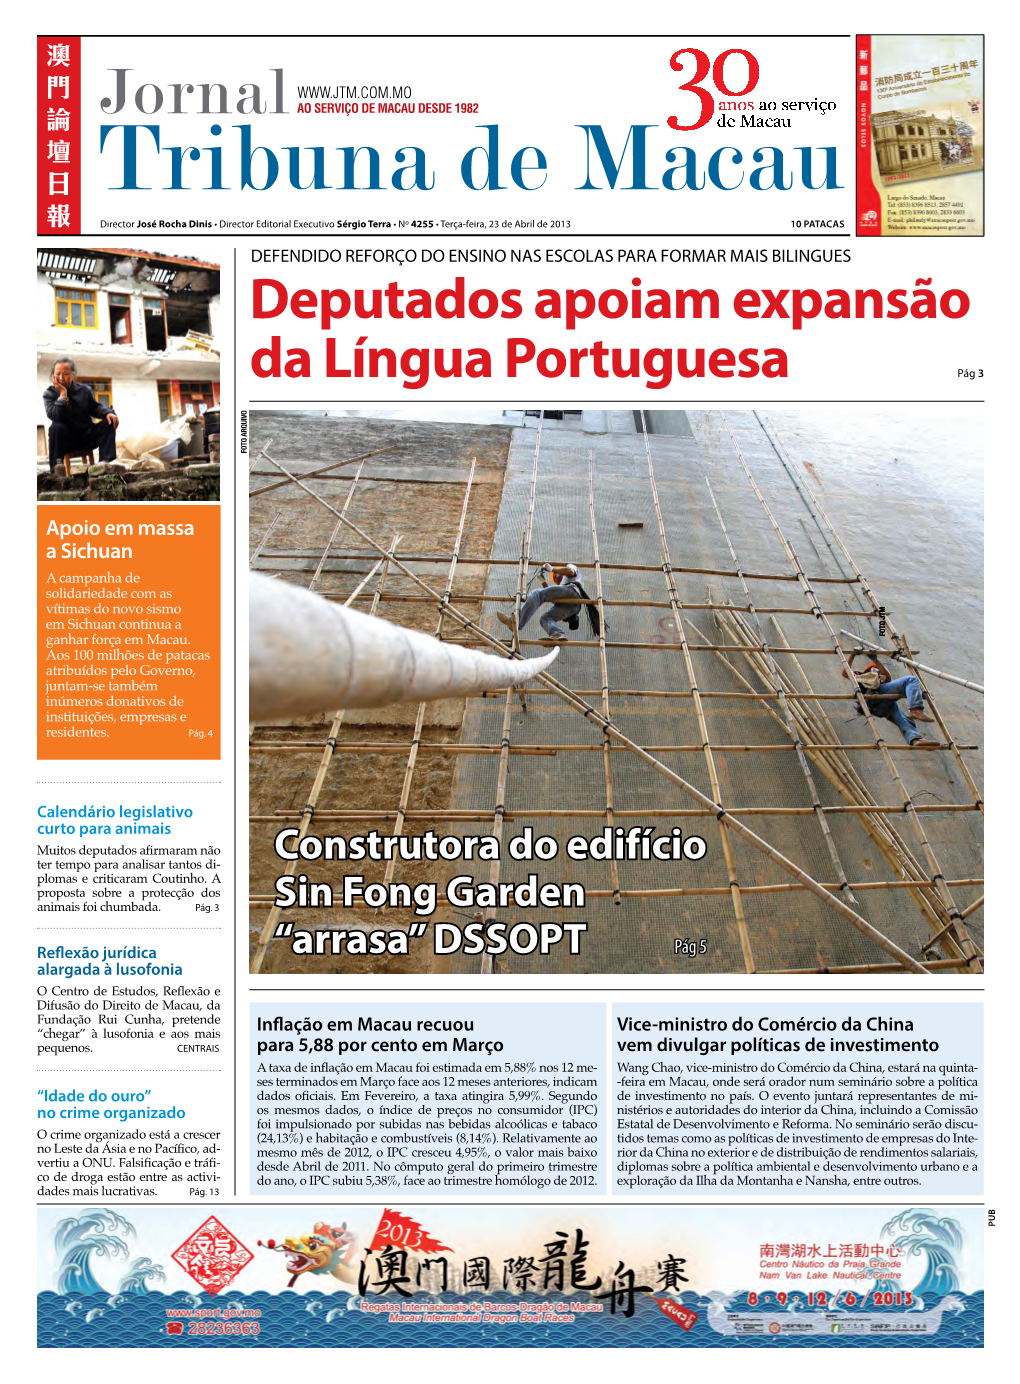 Deputados Apoiam Expansão Da Língua Portuguesa